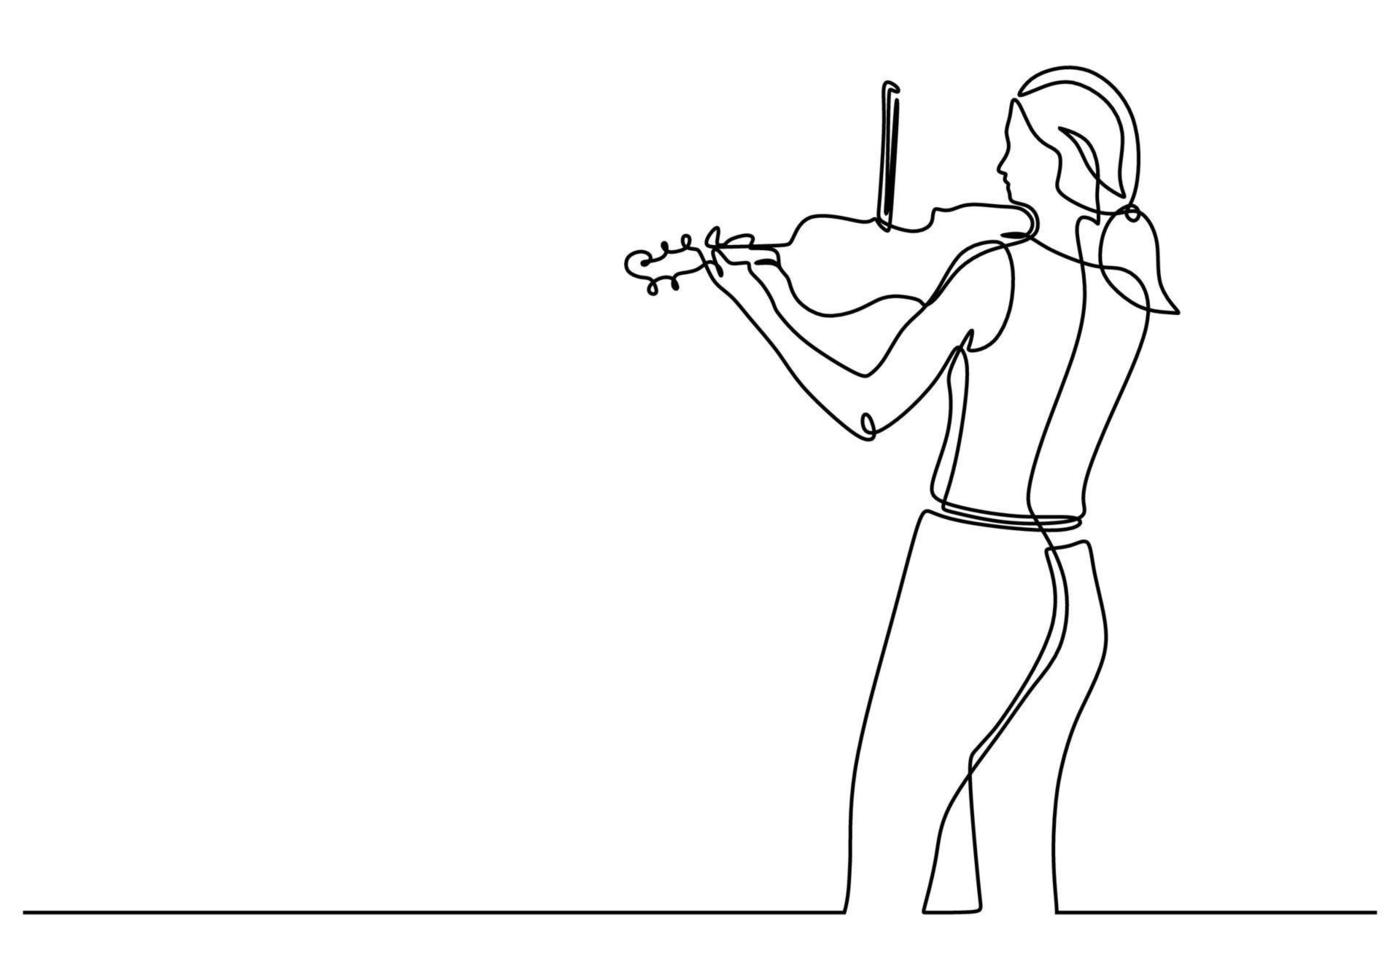 kontinuerlig en linje ritning av ung flicka som spelar fiol vektor